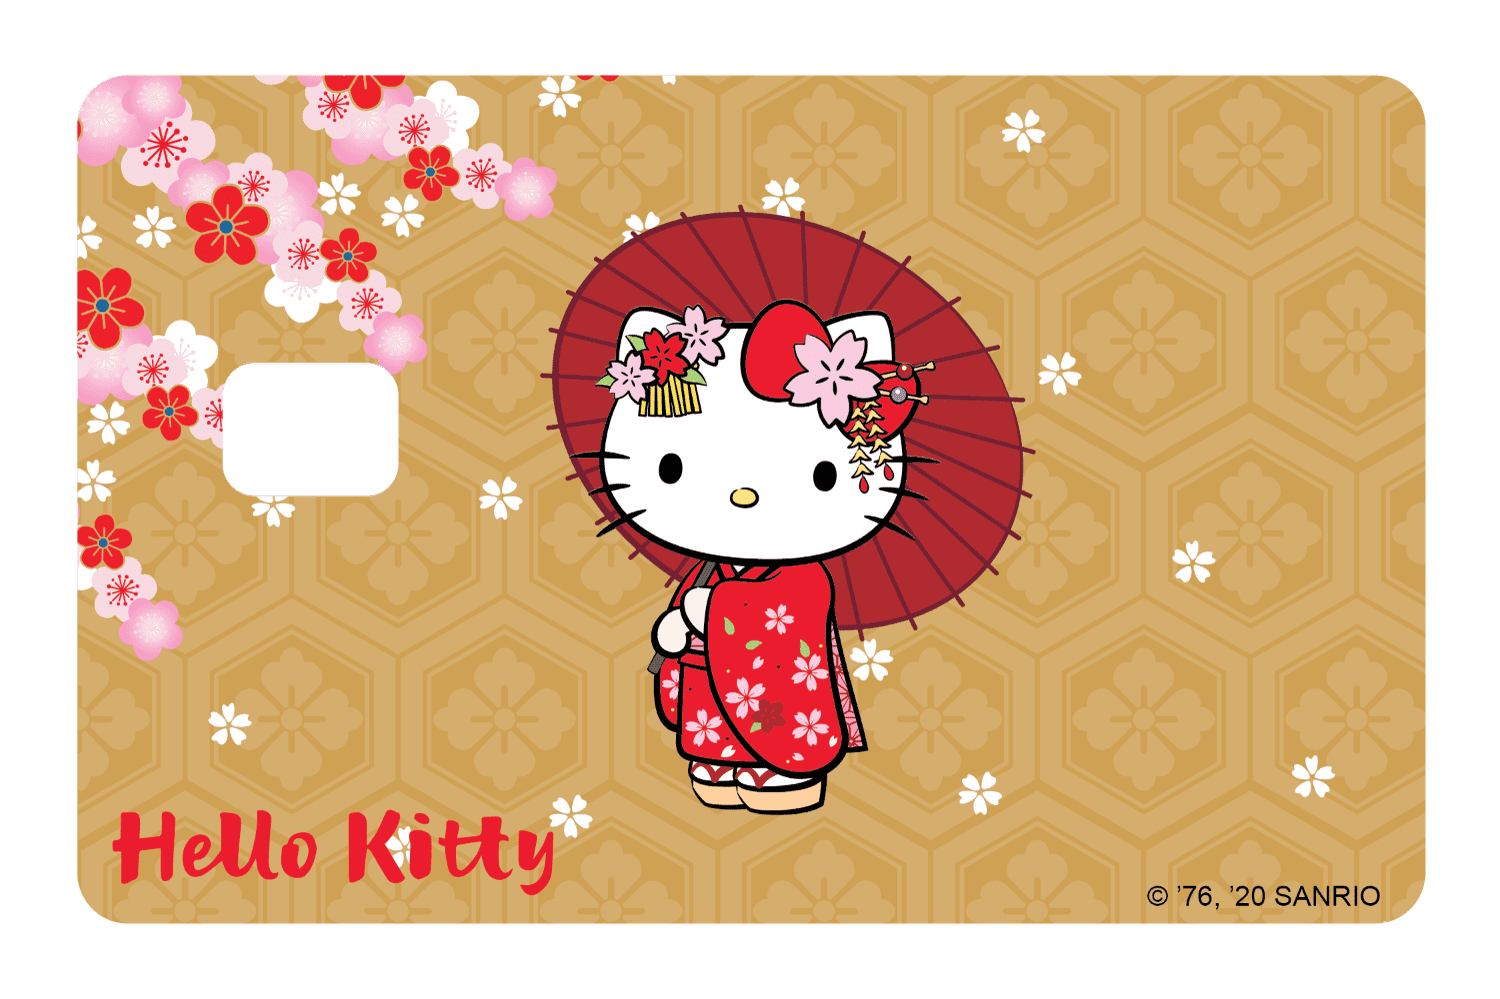 My Kimono